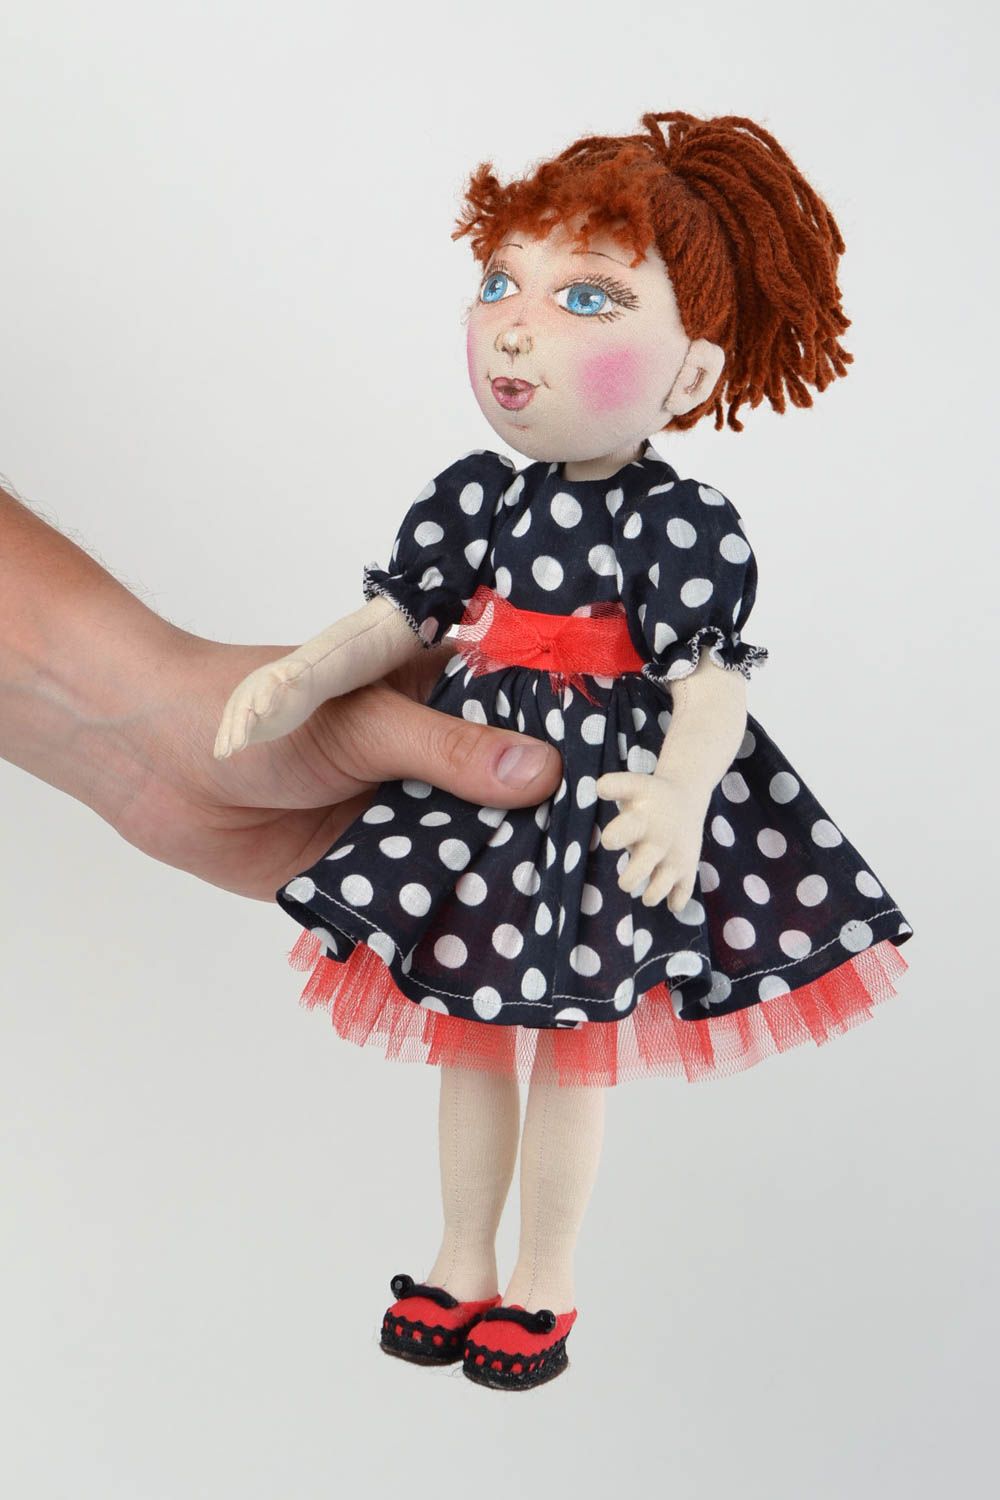 Кукла для интерьера и детей тканевая мягкая игрушка ручной работы Жасмин фото 2